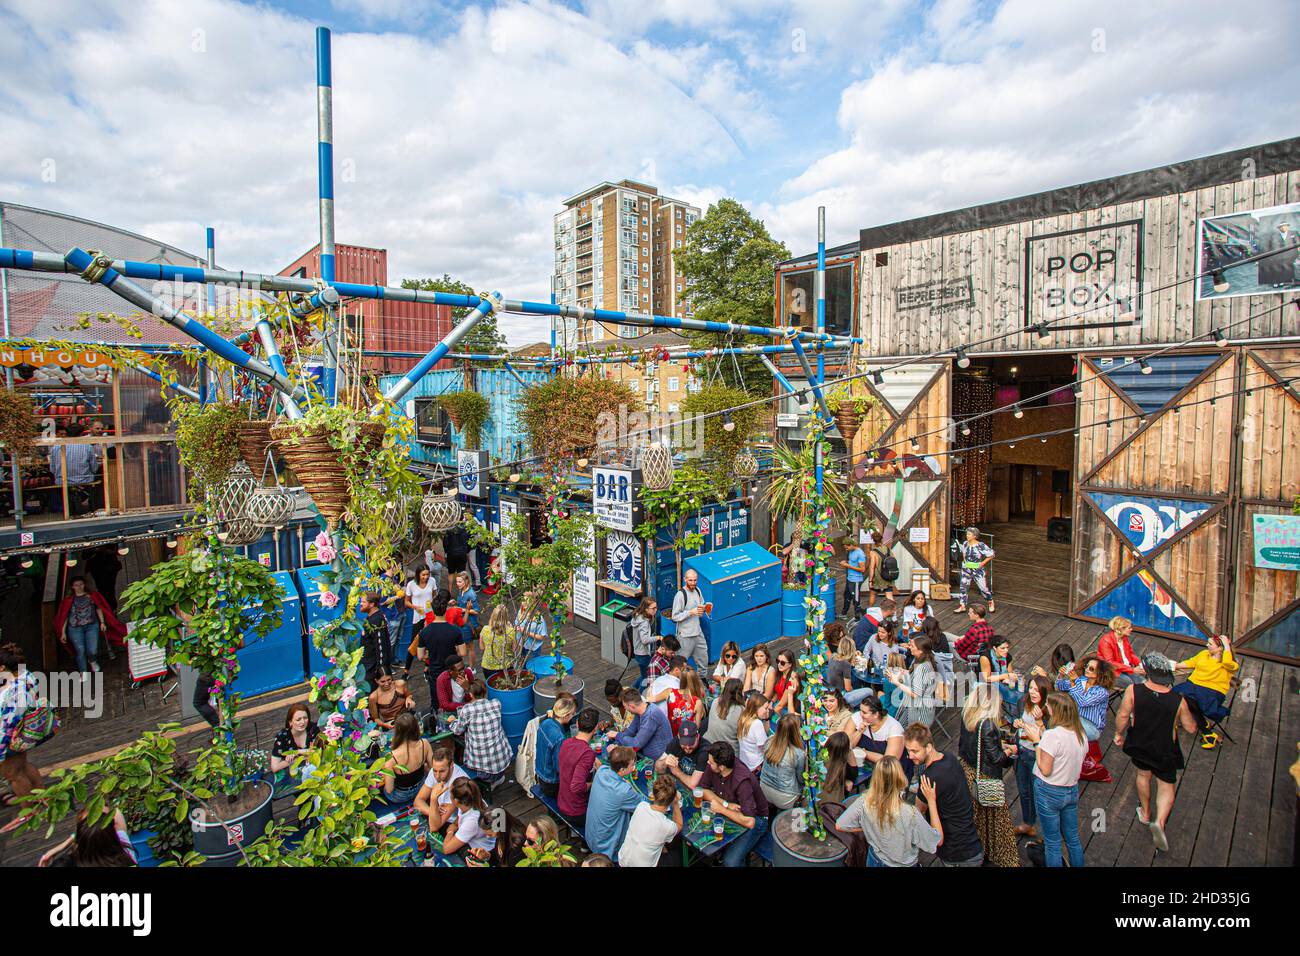 La gente disfruta de una bebida en Brixton, Pop pop up contenedor bares y restaurantes en Brixton, Londres, Reino Unido. Foto de stock